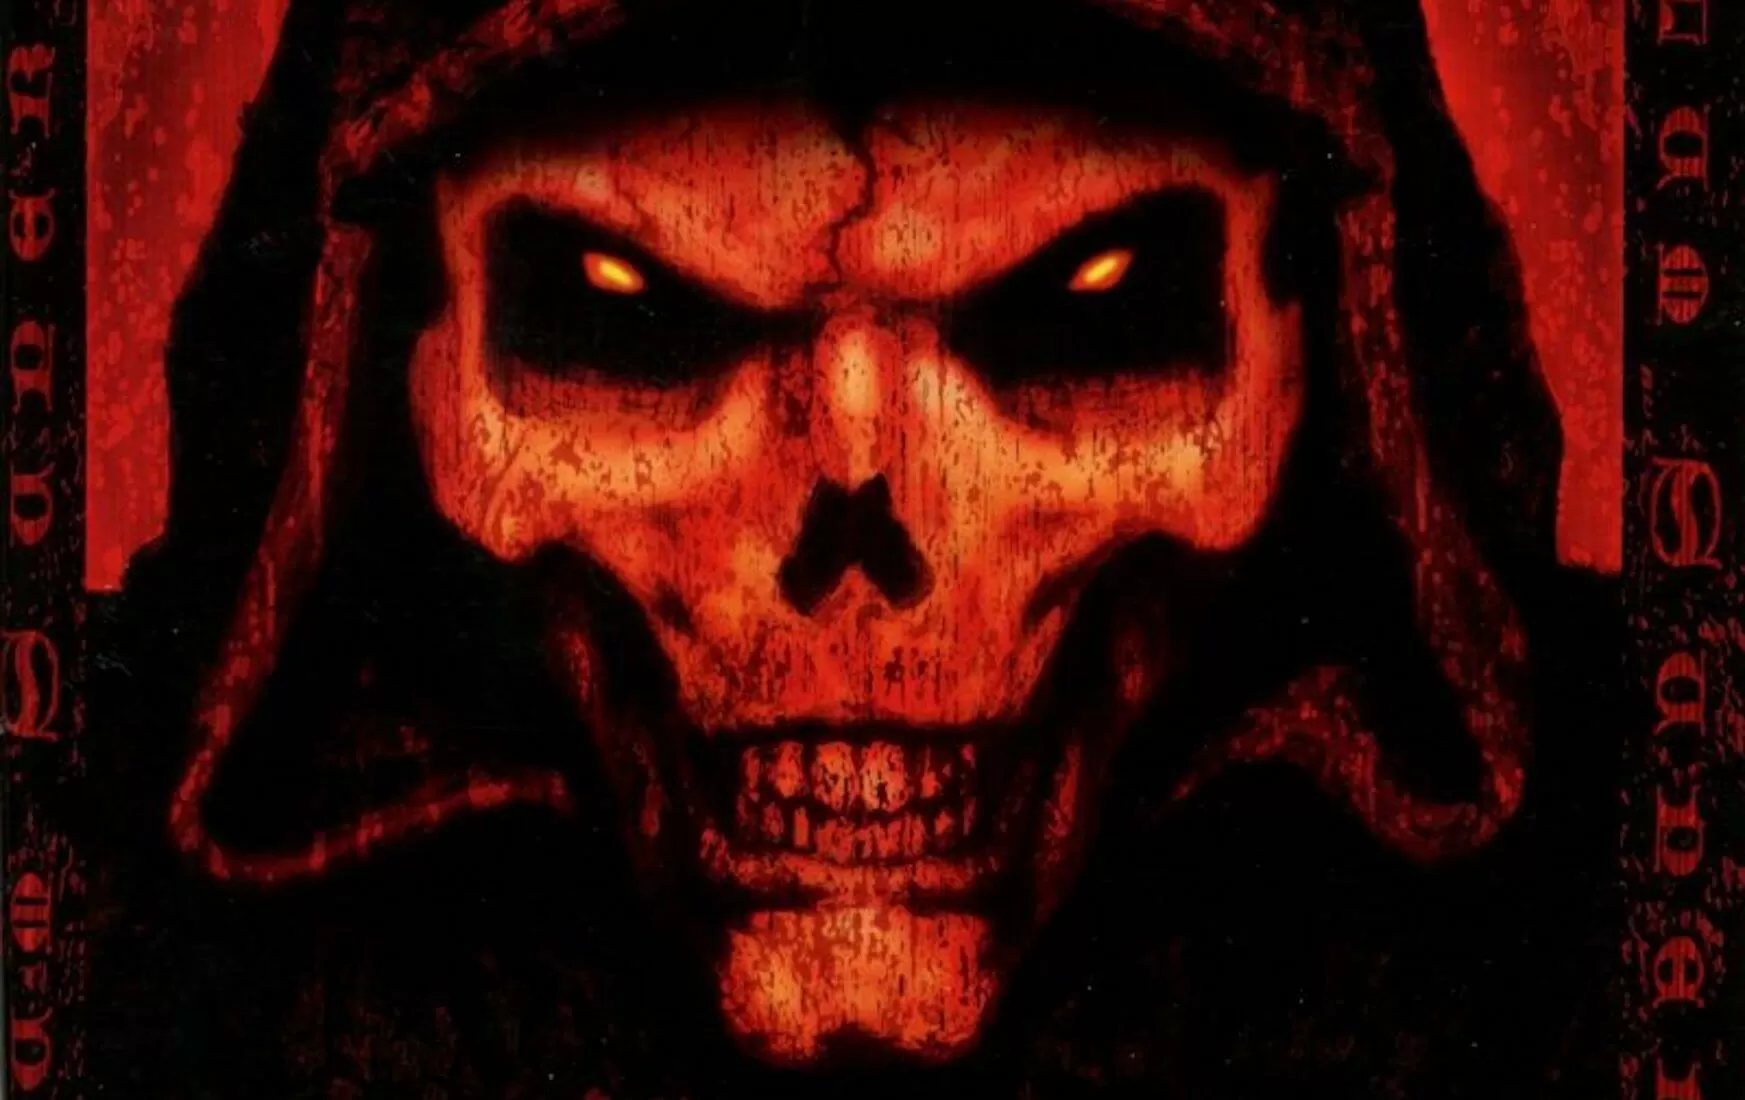 El speedrunner de Diablo 2 obtiene la legendaria runa Zod y trollea a la audiencia vendiéndola inmediatamente